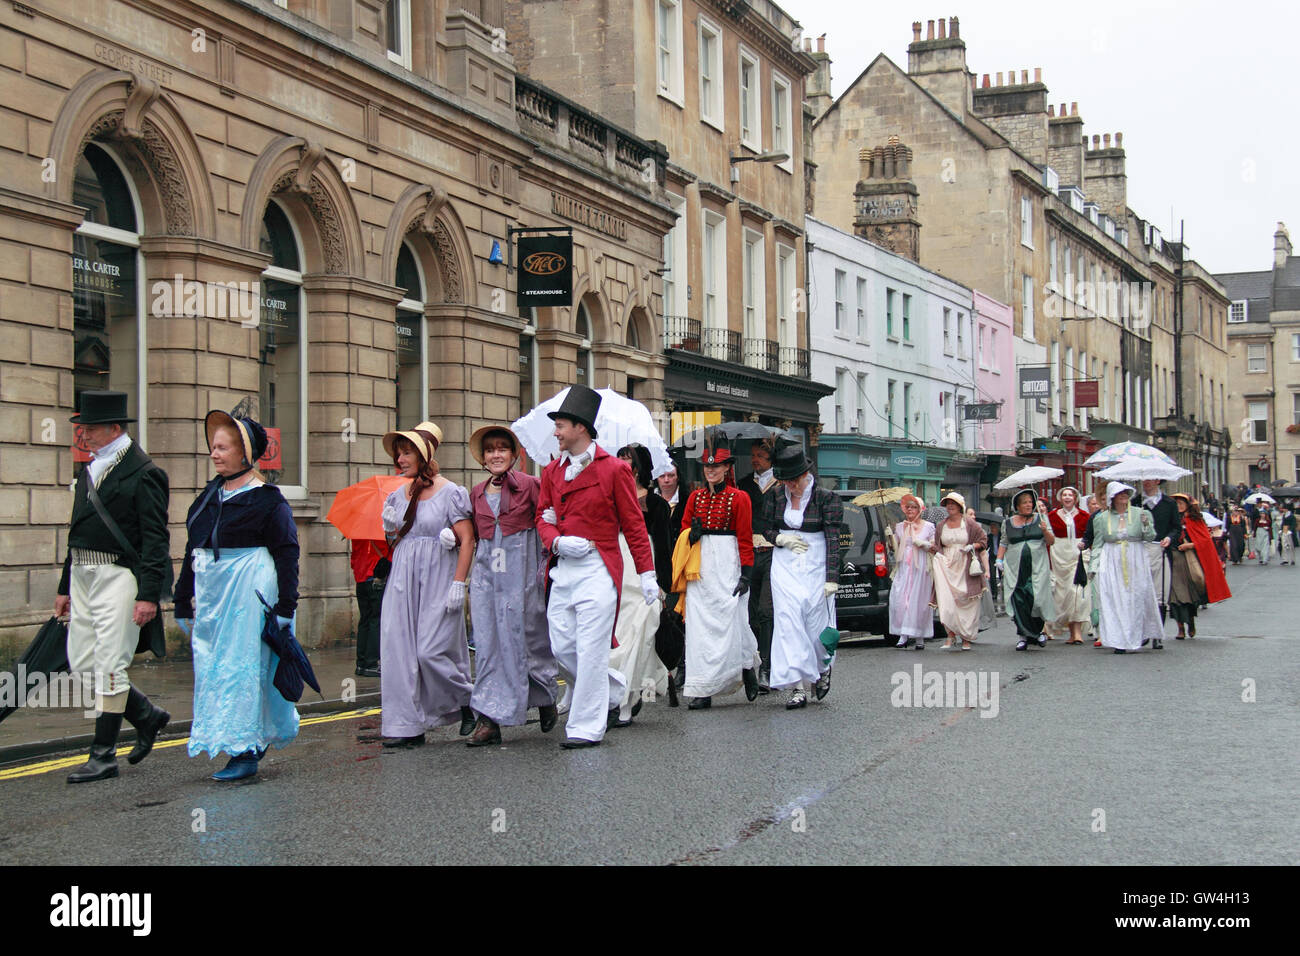 Jane Austen Festival. 9ª-18ª de septiembre de 2016. Bath, Somerset, Inglaterra, Reino Unido. La lluvia no pudieron aplacar los ánimos de los participantes en las murgas de Grand Regency Promenade, el sábado 10 de septiembre de 2016. Crédito: Ian Botella/Alamy Live News Foto de stock